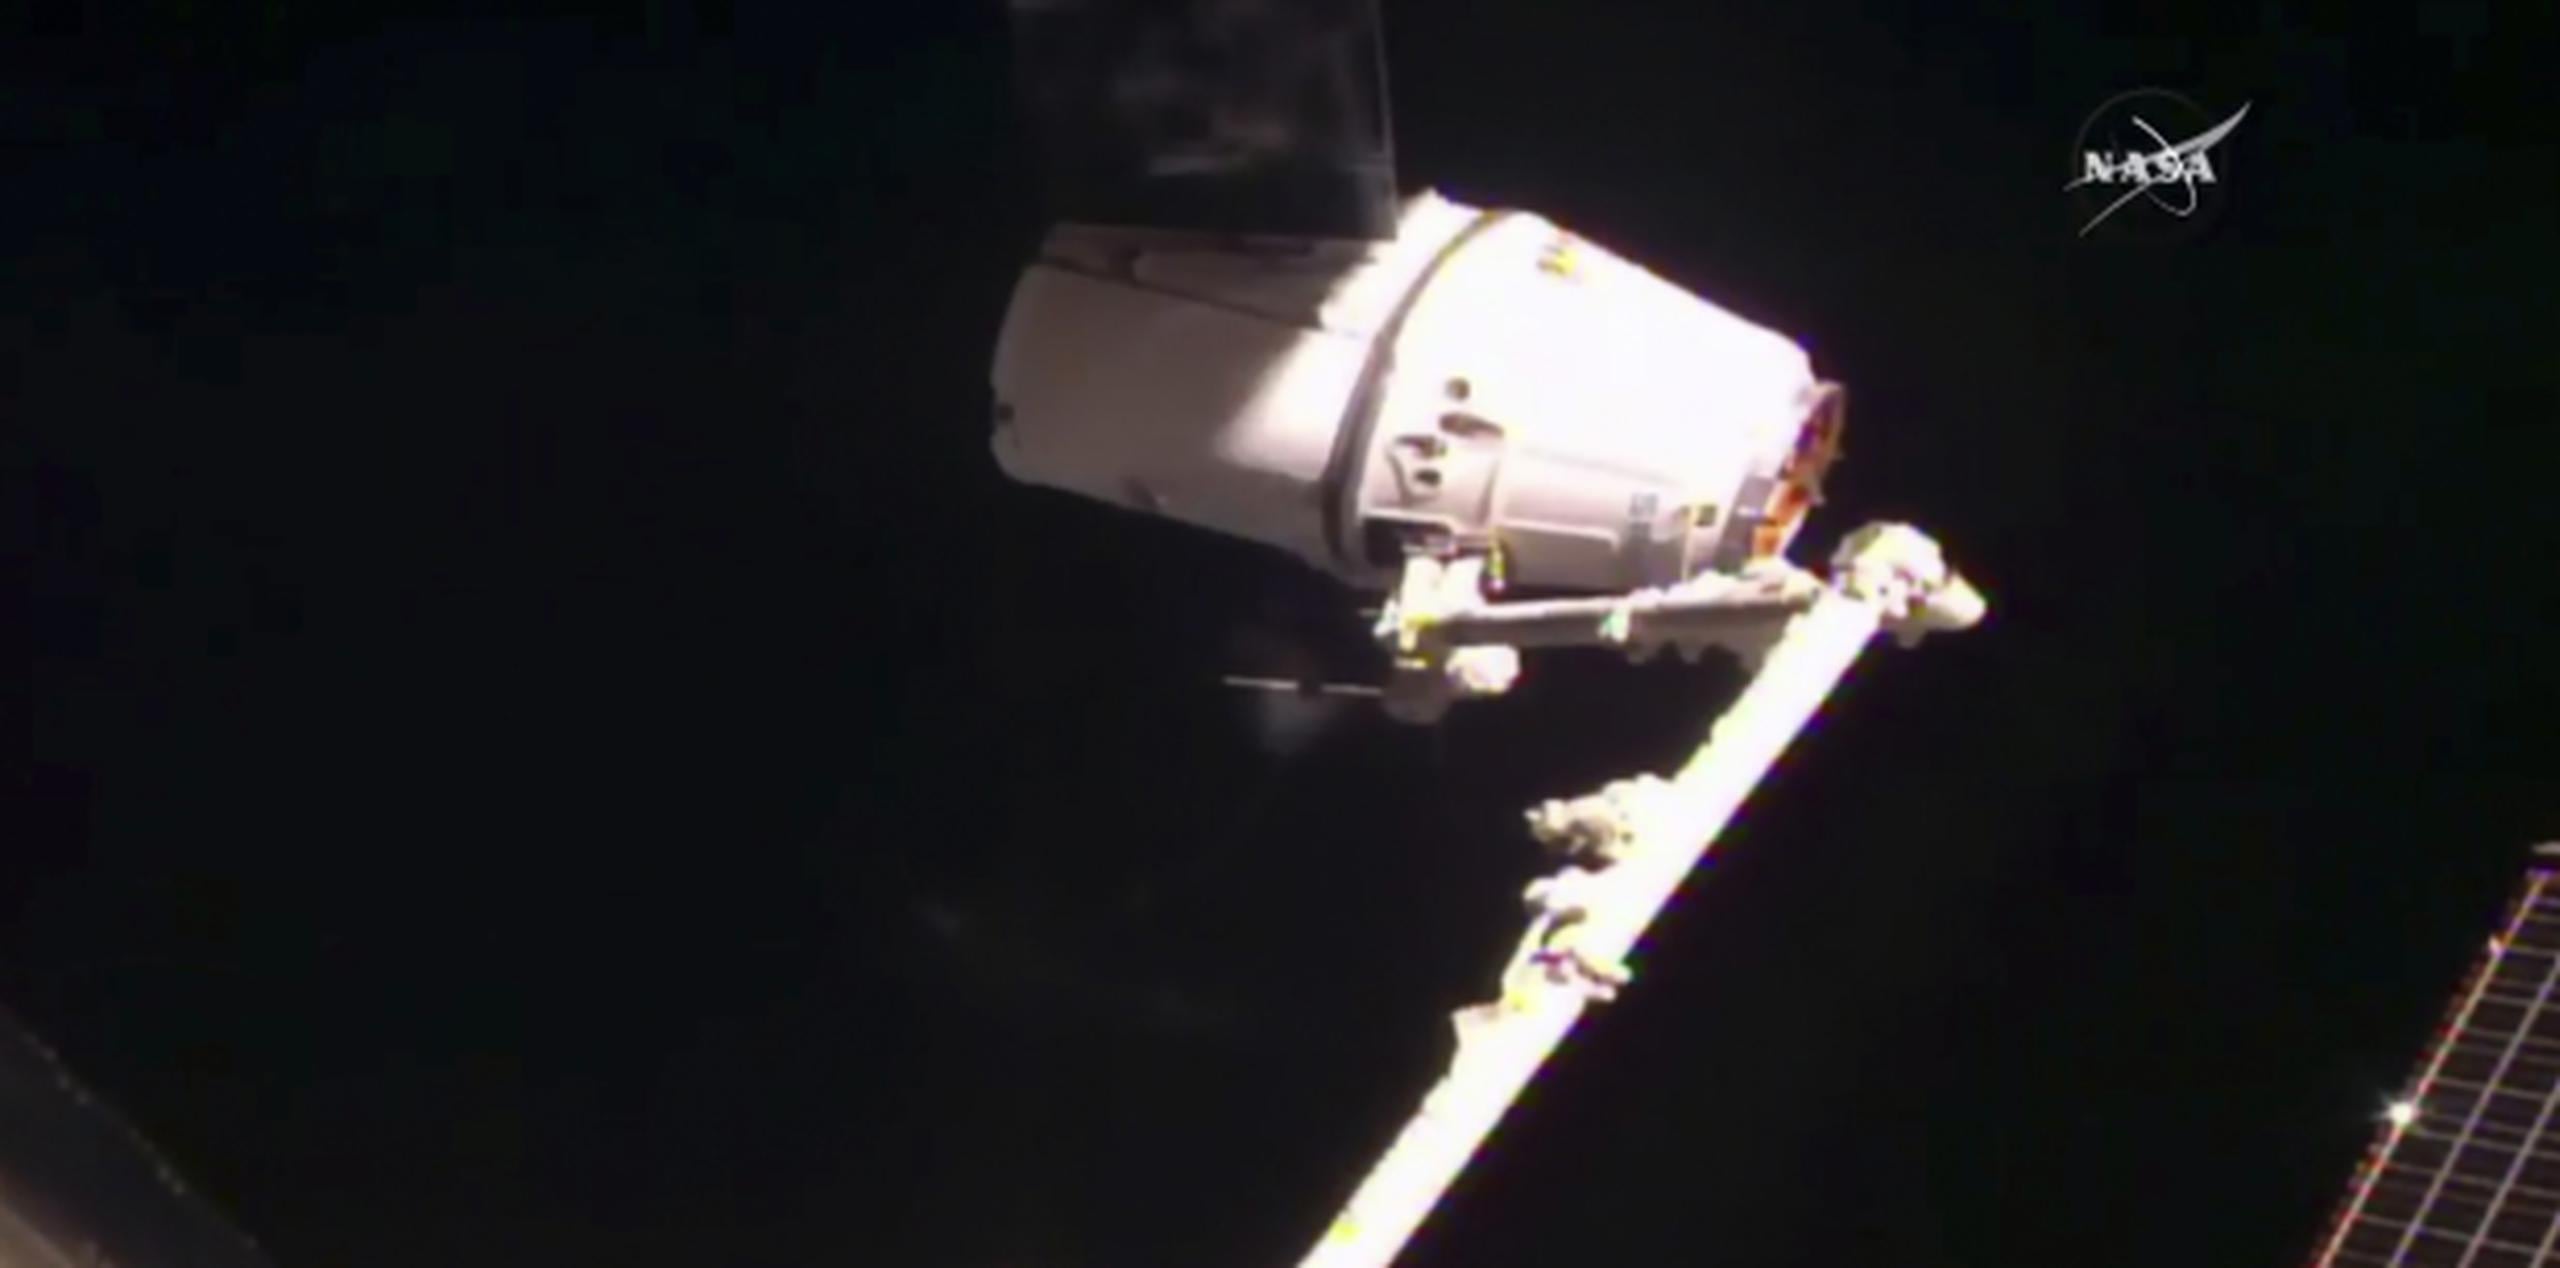 El brazo mecánico de la Estación Espacial Internacional captura la nave de carga Dragón de SpaceX, para recibir 5,500 libras de suministros. (NASA TV via AP)